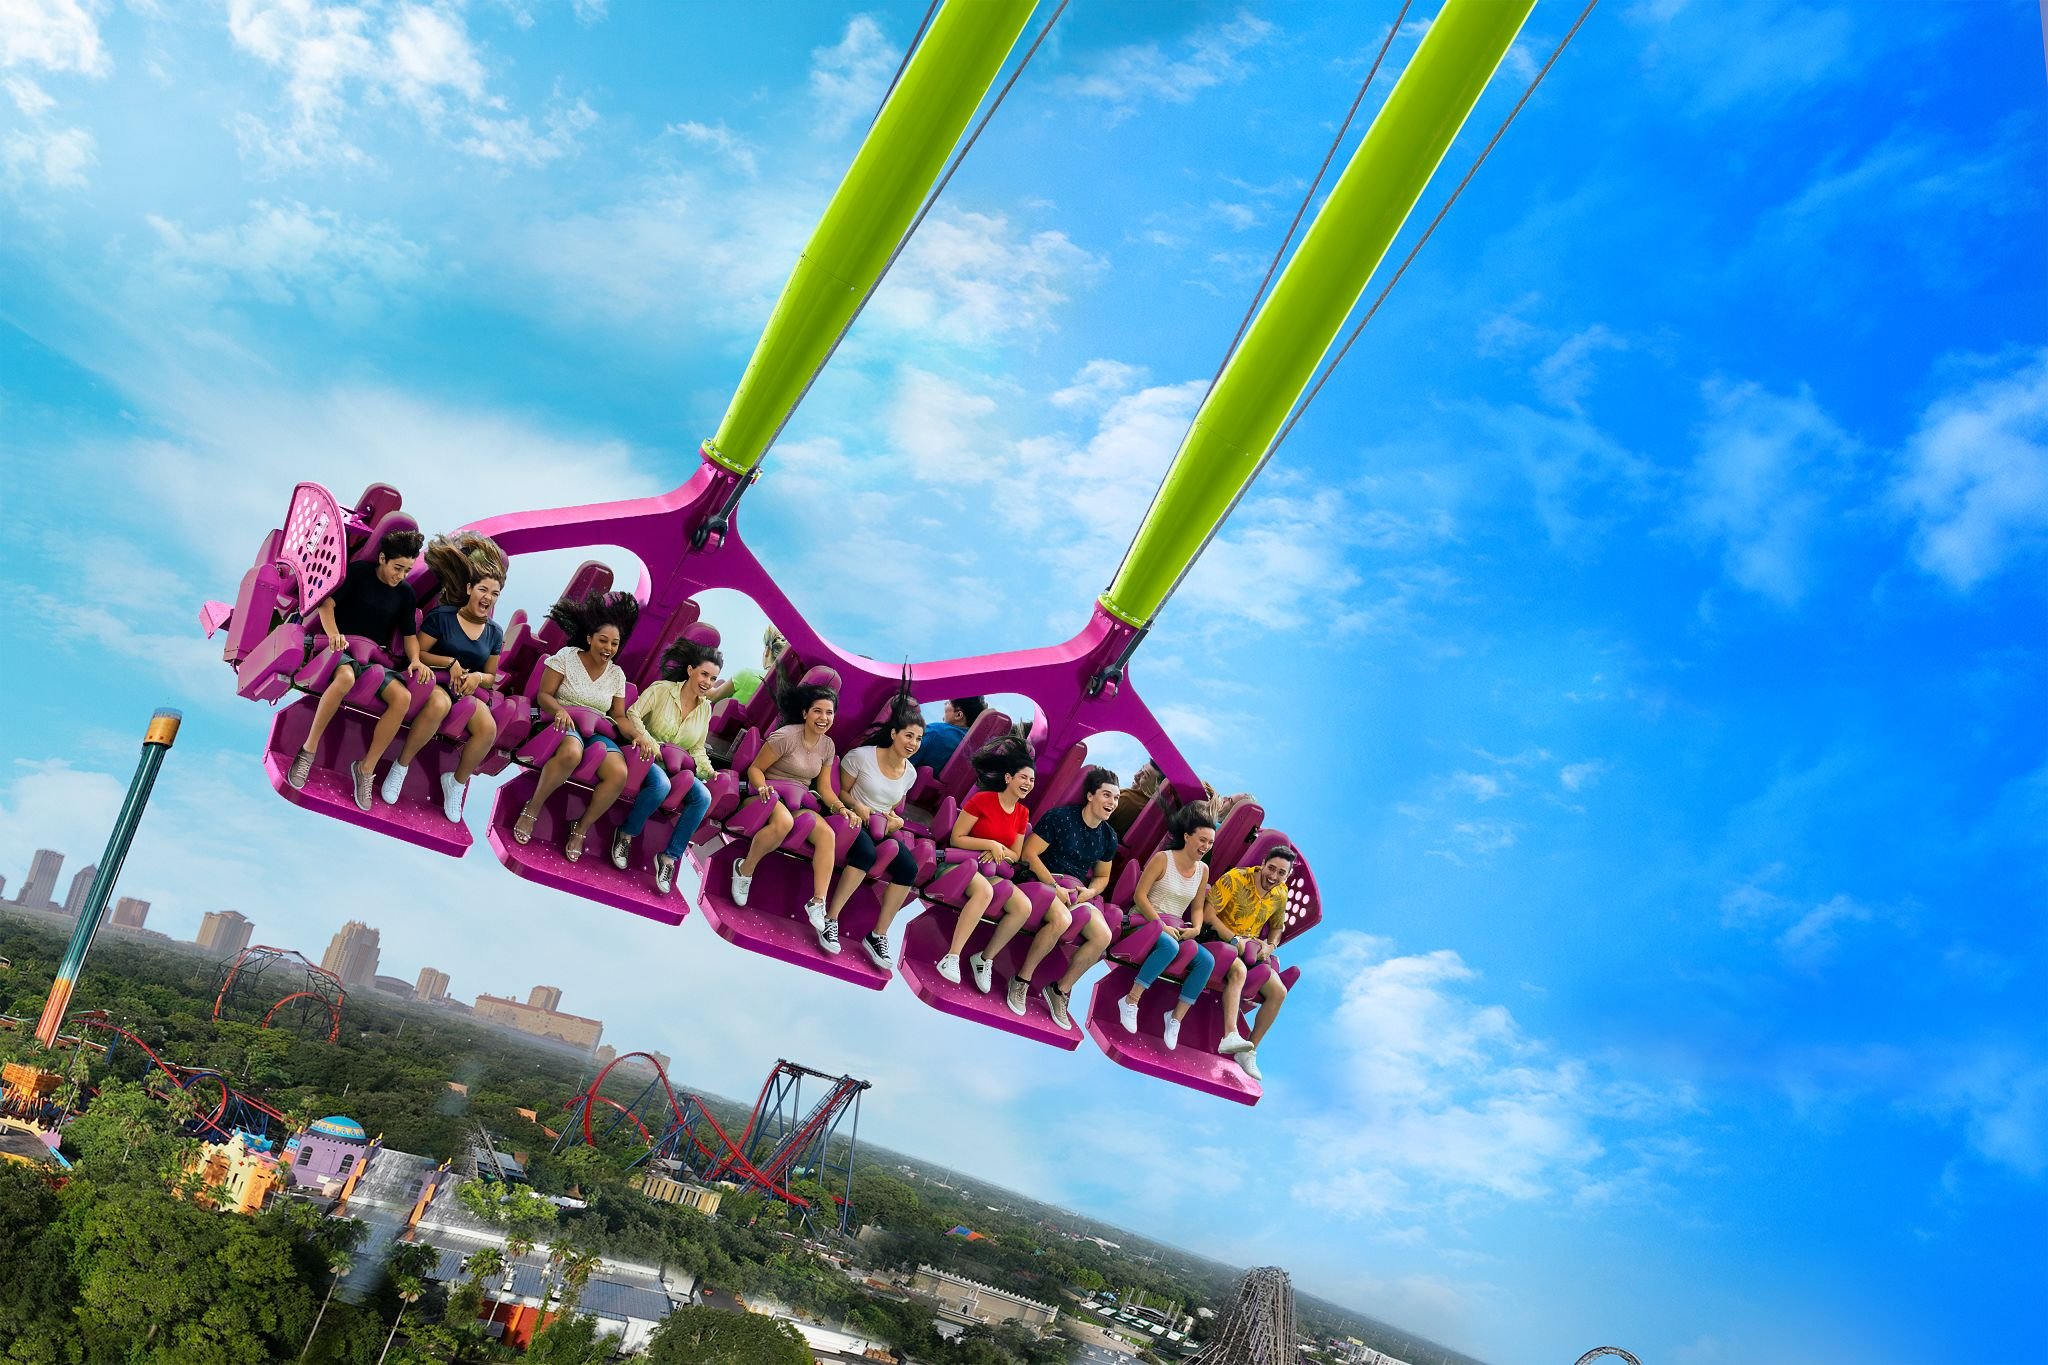 Best Thrill Rides & Roller Coasters at Busch Gardens - Virginia